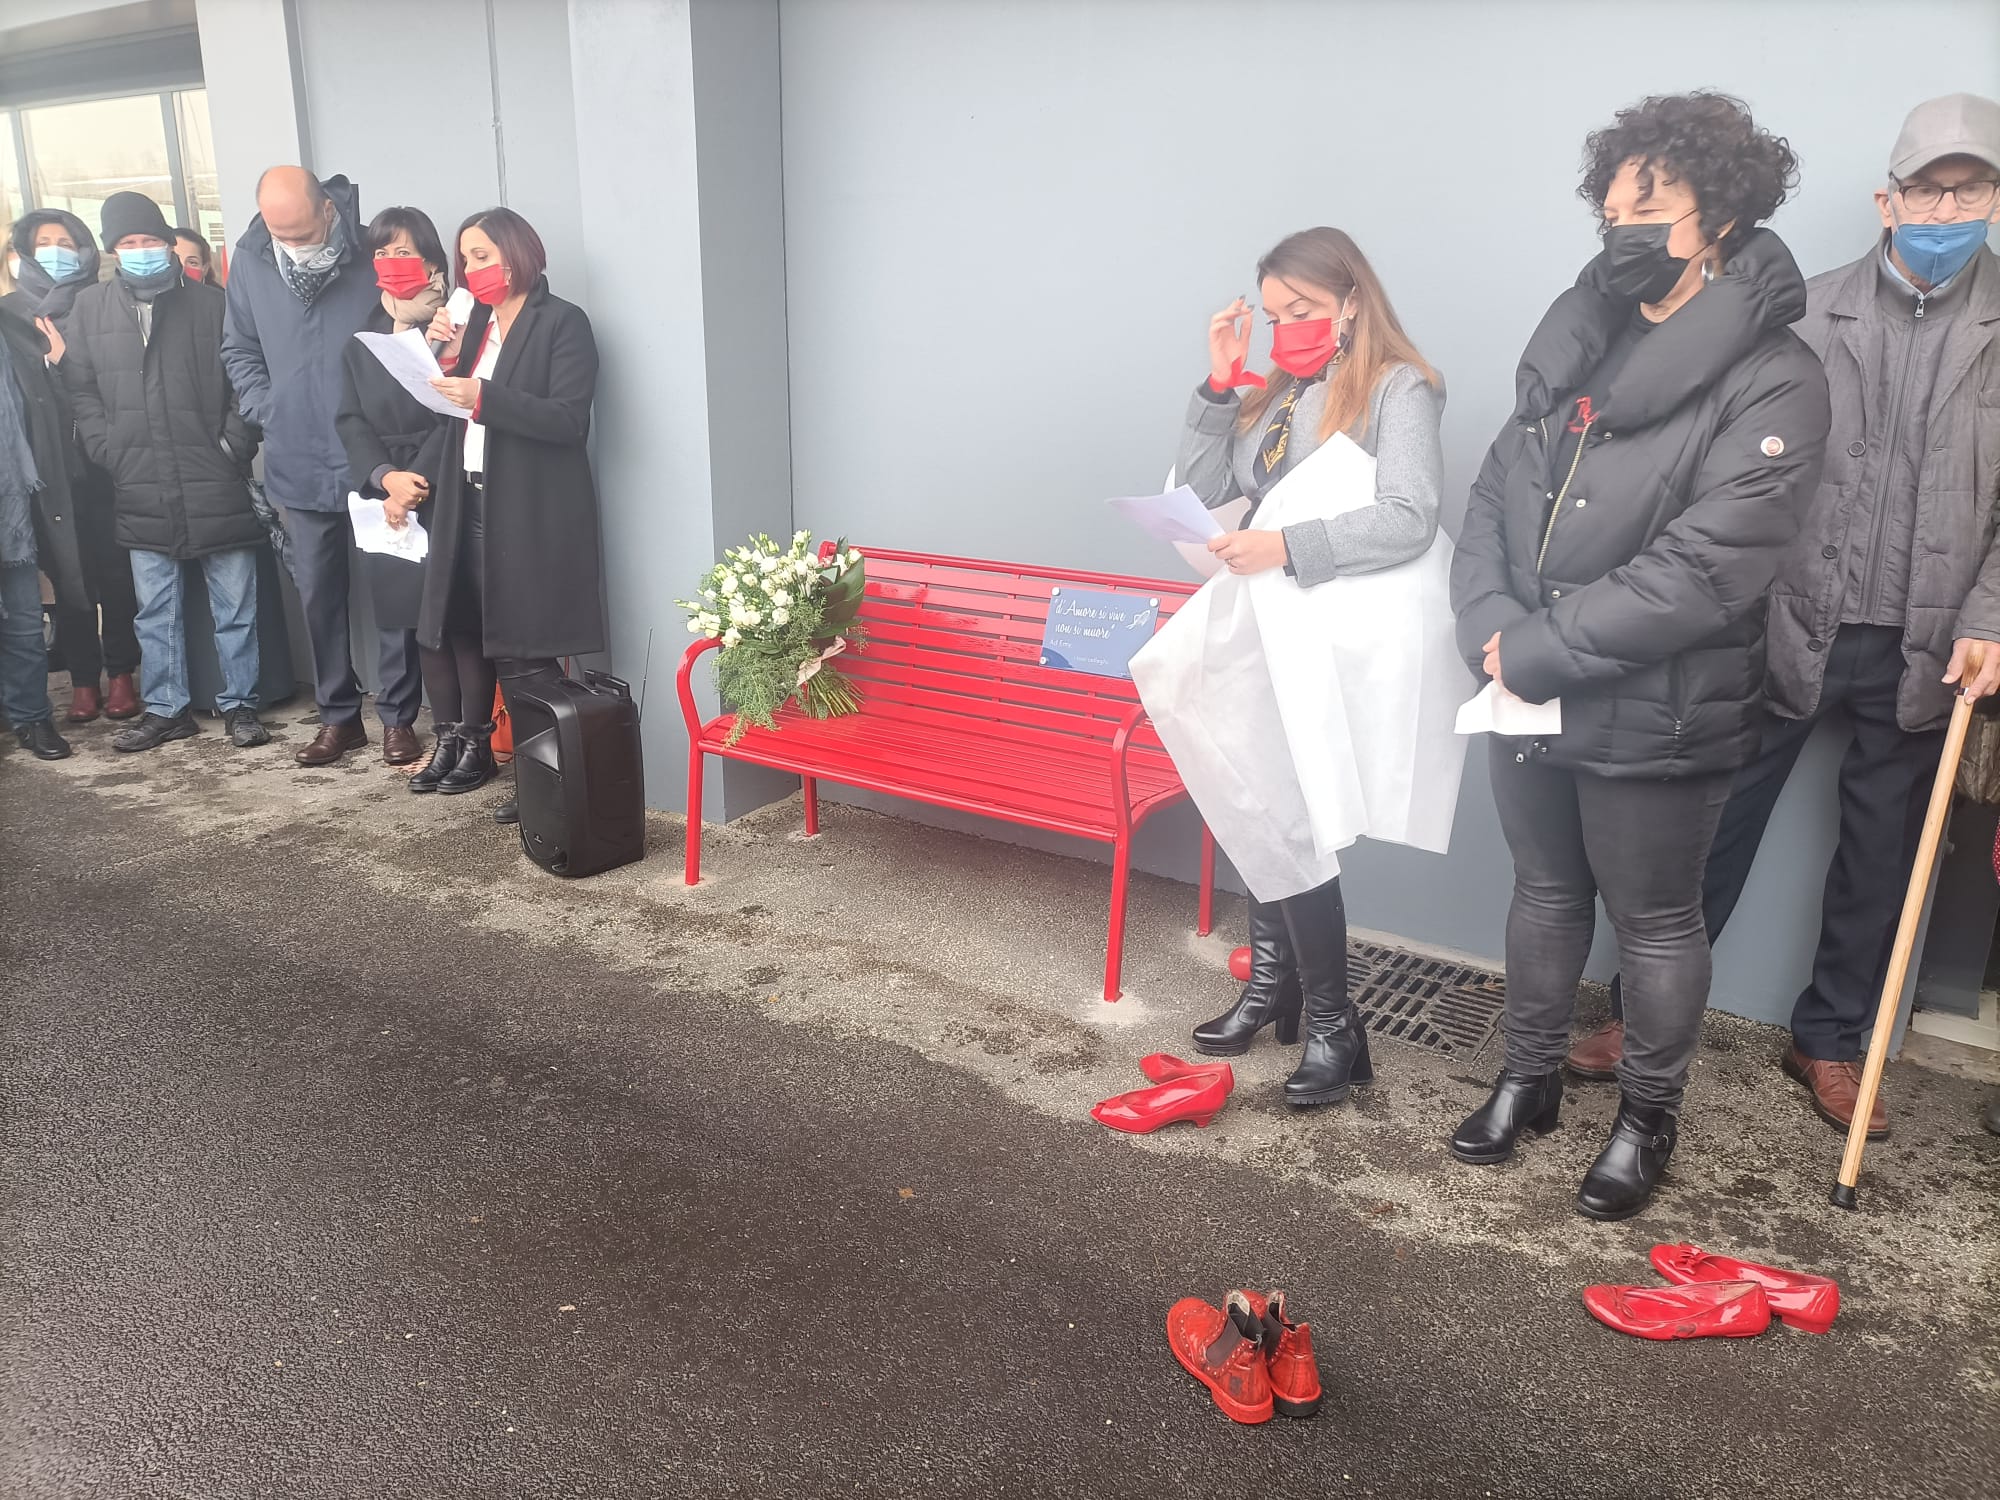 LA LOGGIA – Inaugurata la panchina rossa in memoria di Emanuela Urso